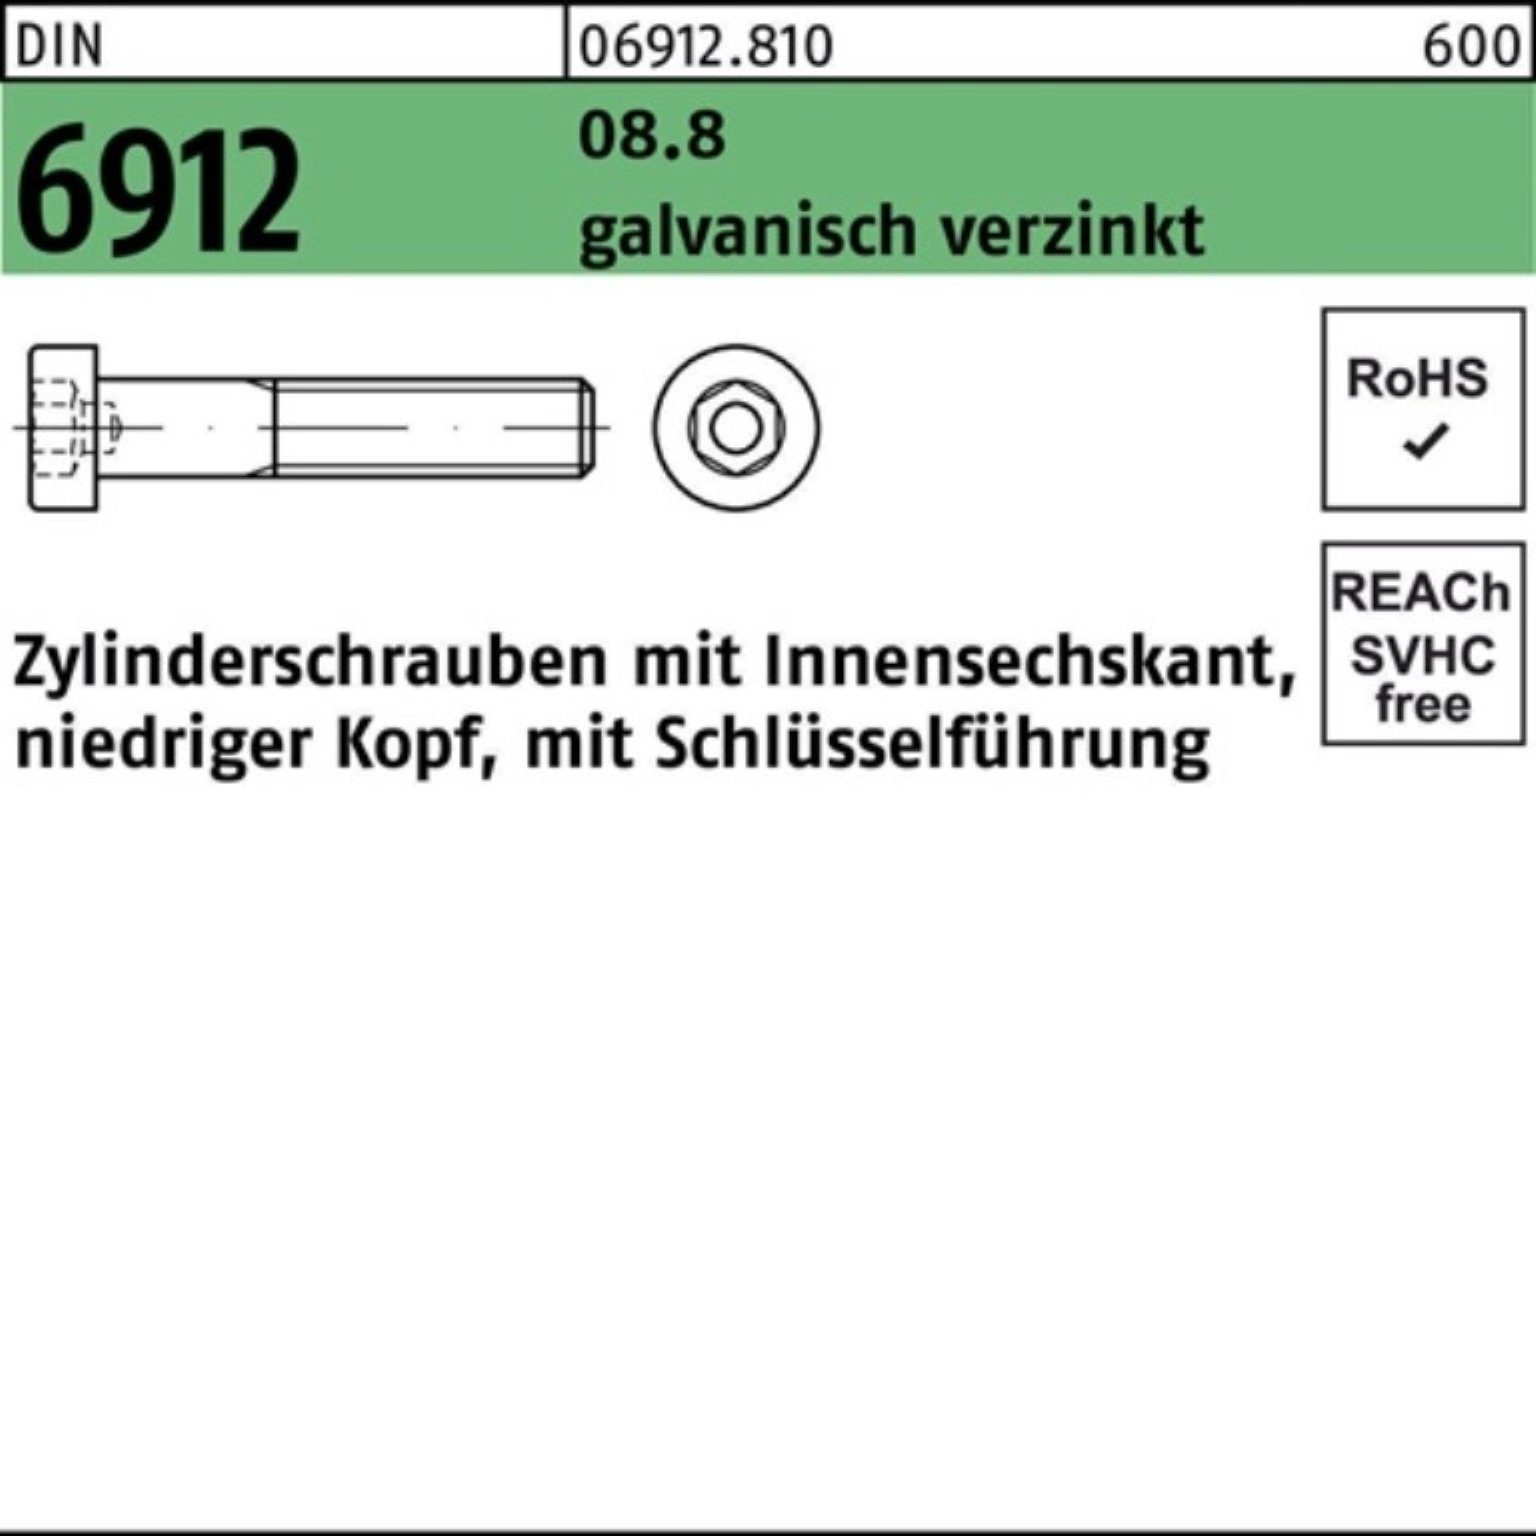 8.8 100er Innen-6kt Zylinderschraube Zylinderschraube Reyher Pack 6912 DIN galv.verz. M12x110